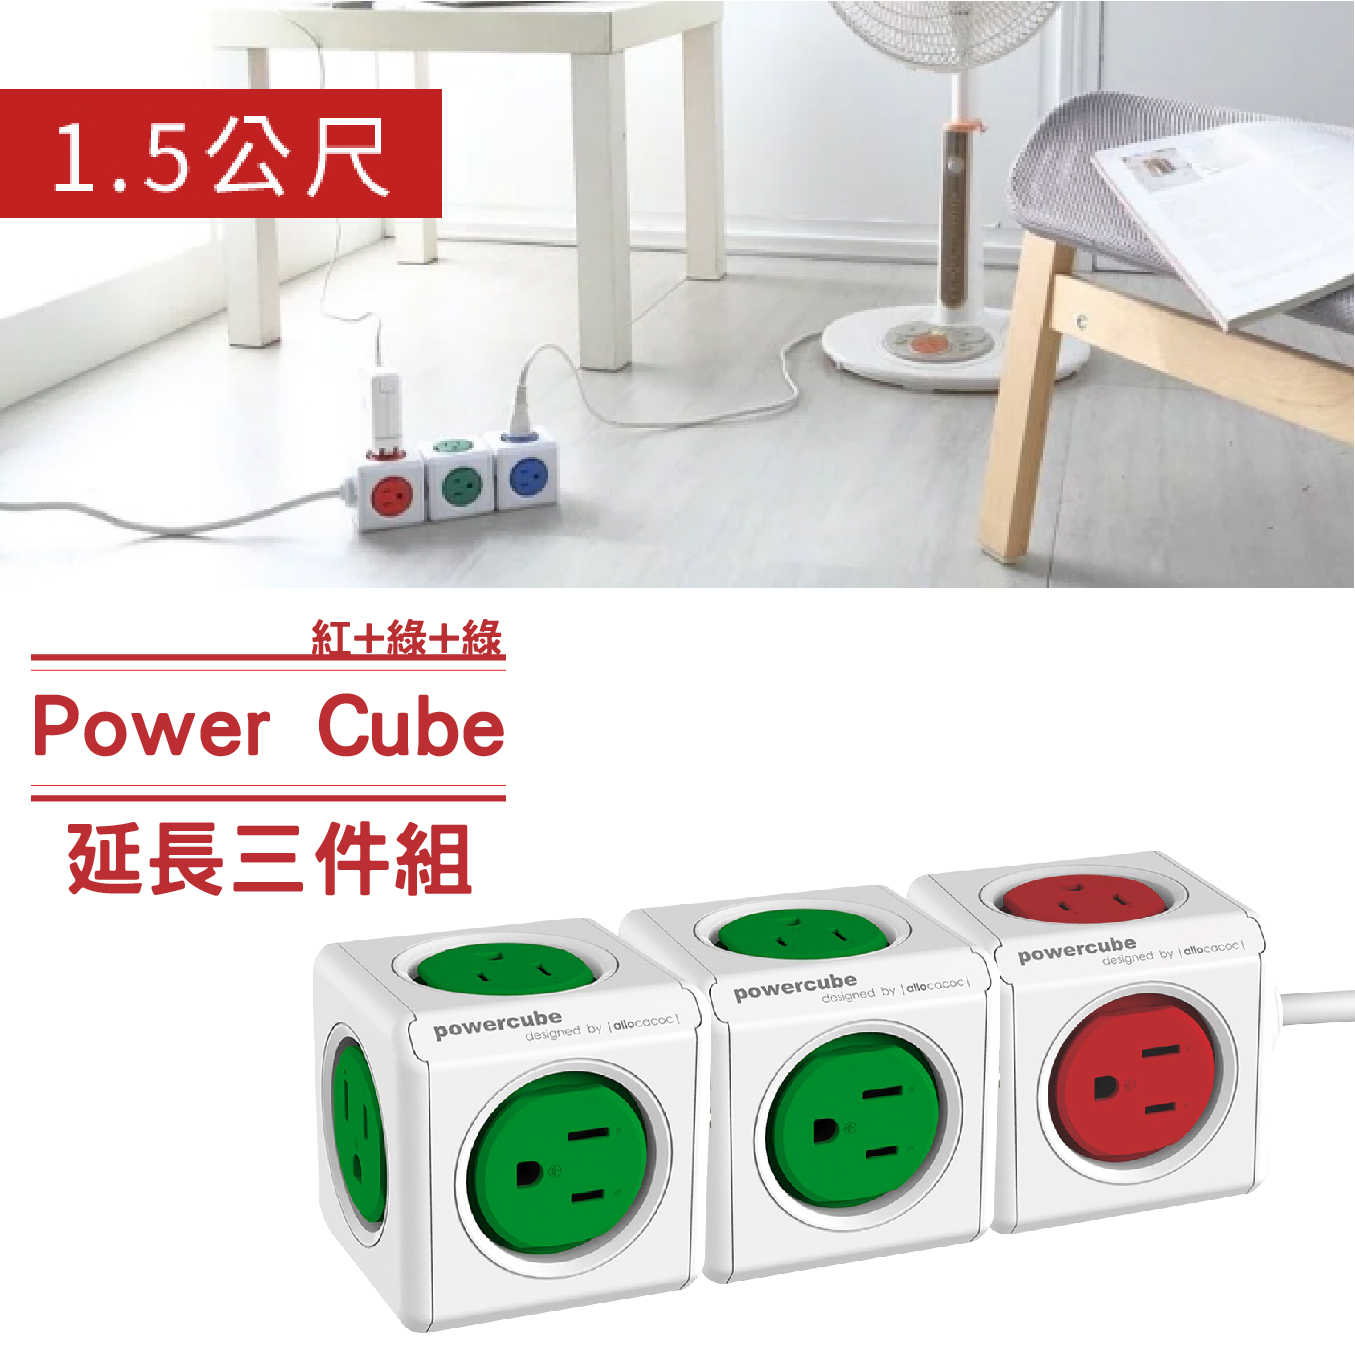 【特惠】PowerCube 延長線 2綠+1紅 (4143)魔術方塊延長線 超值組合